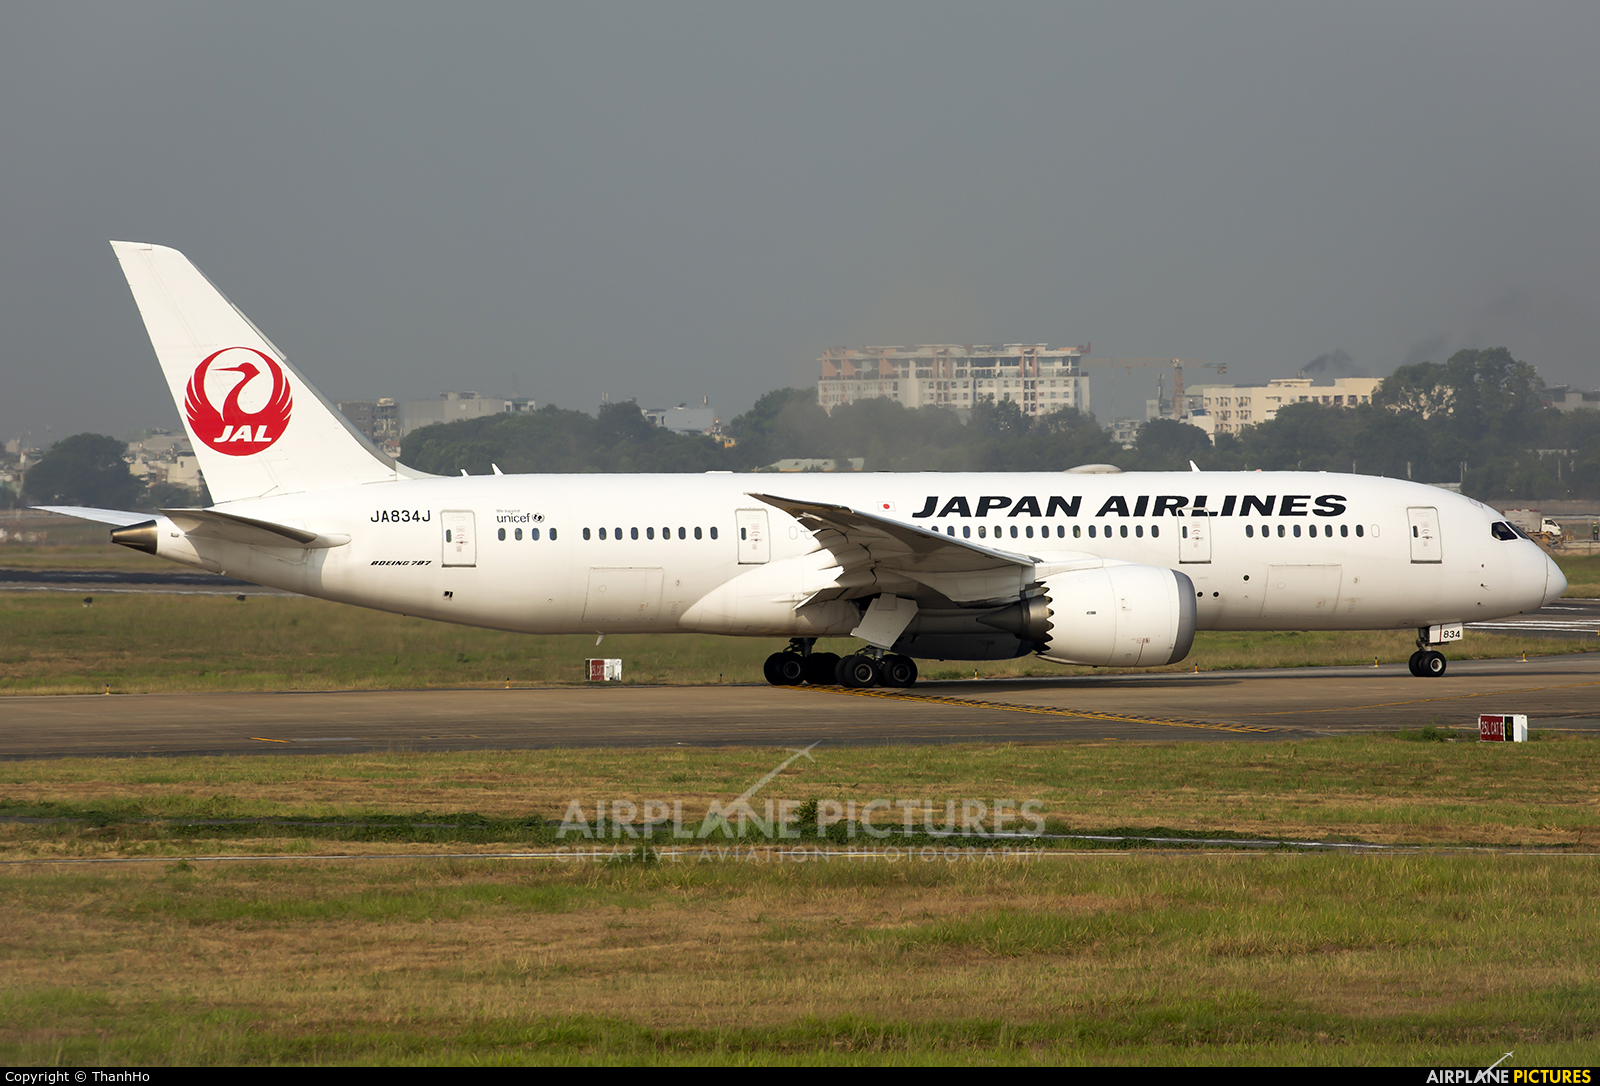 JAL - Japan Airlines JA834J aircraft at Ho Chi Minh City - Tan Son Nhat Intl